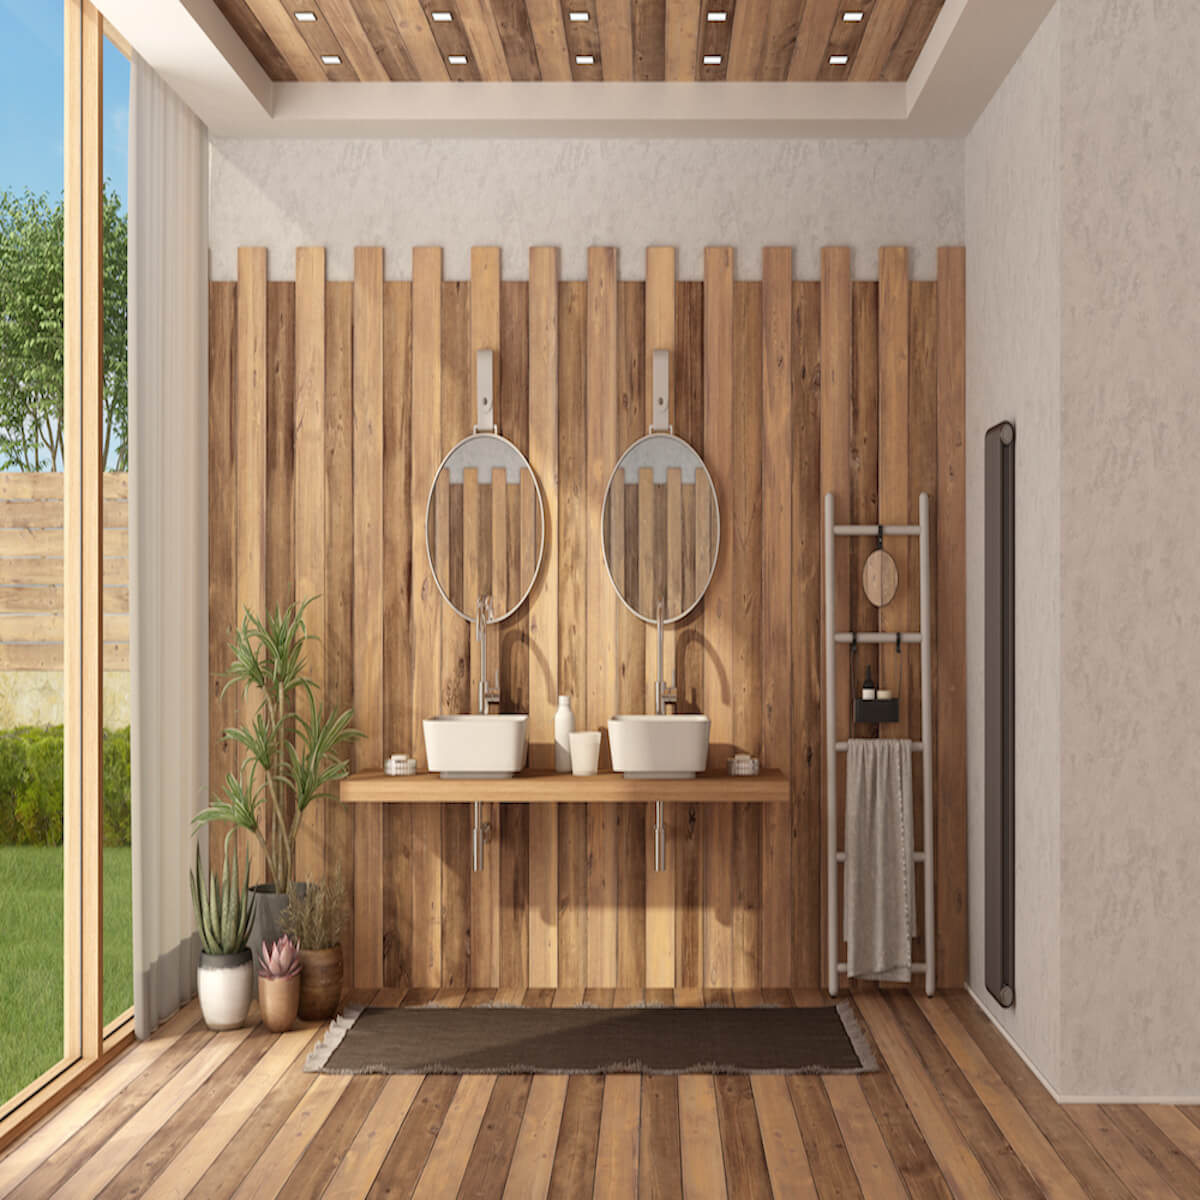 Drewniane meble do łazienki – wady i zalety takiego rozwiązania